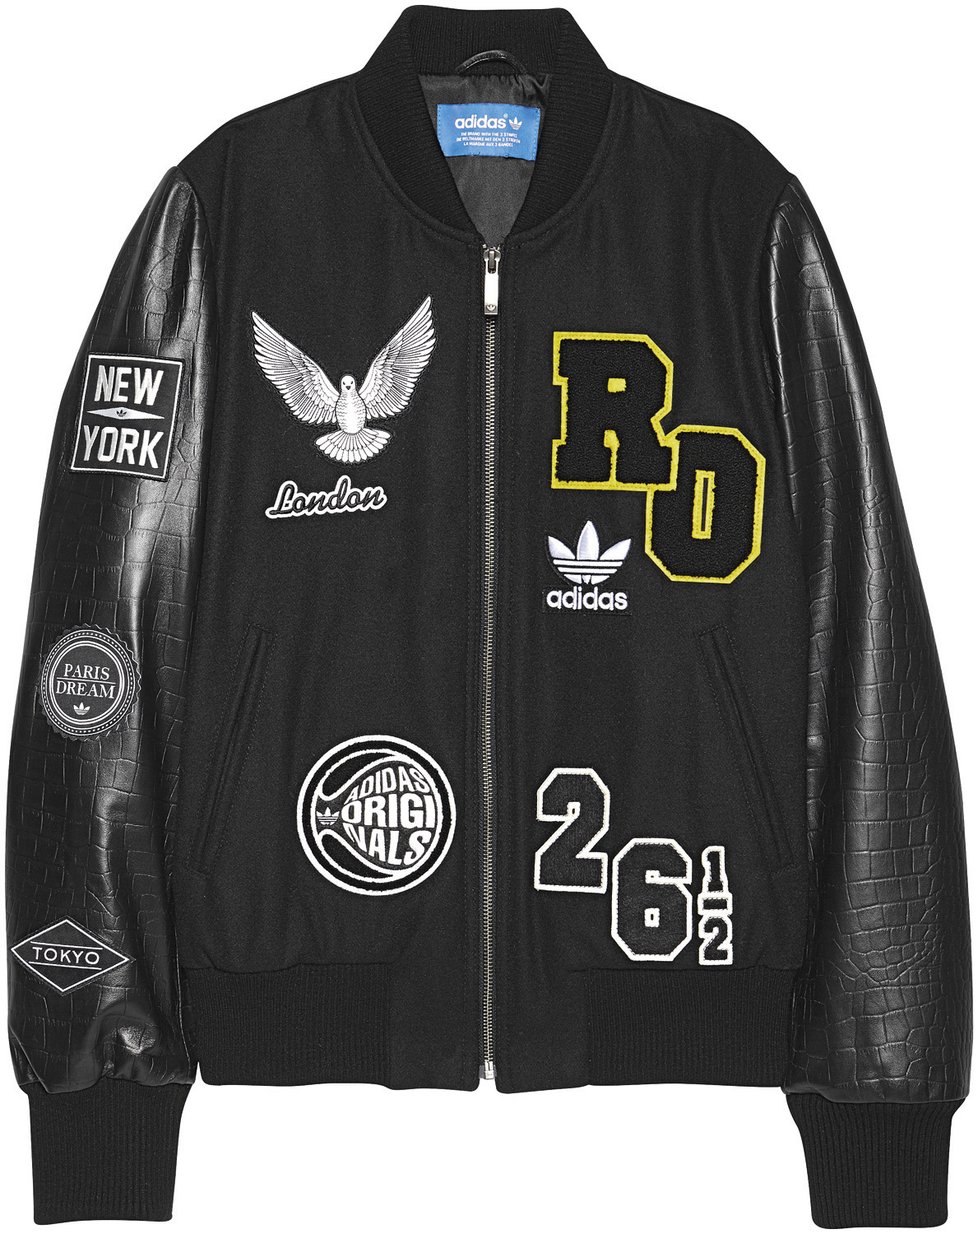 Bomber navržený zpěvačkou Rita Ora, Adidas, info o ceně v obchodě.